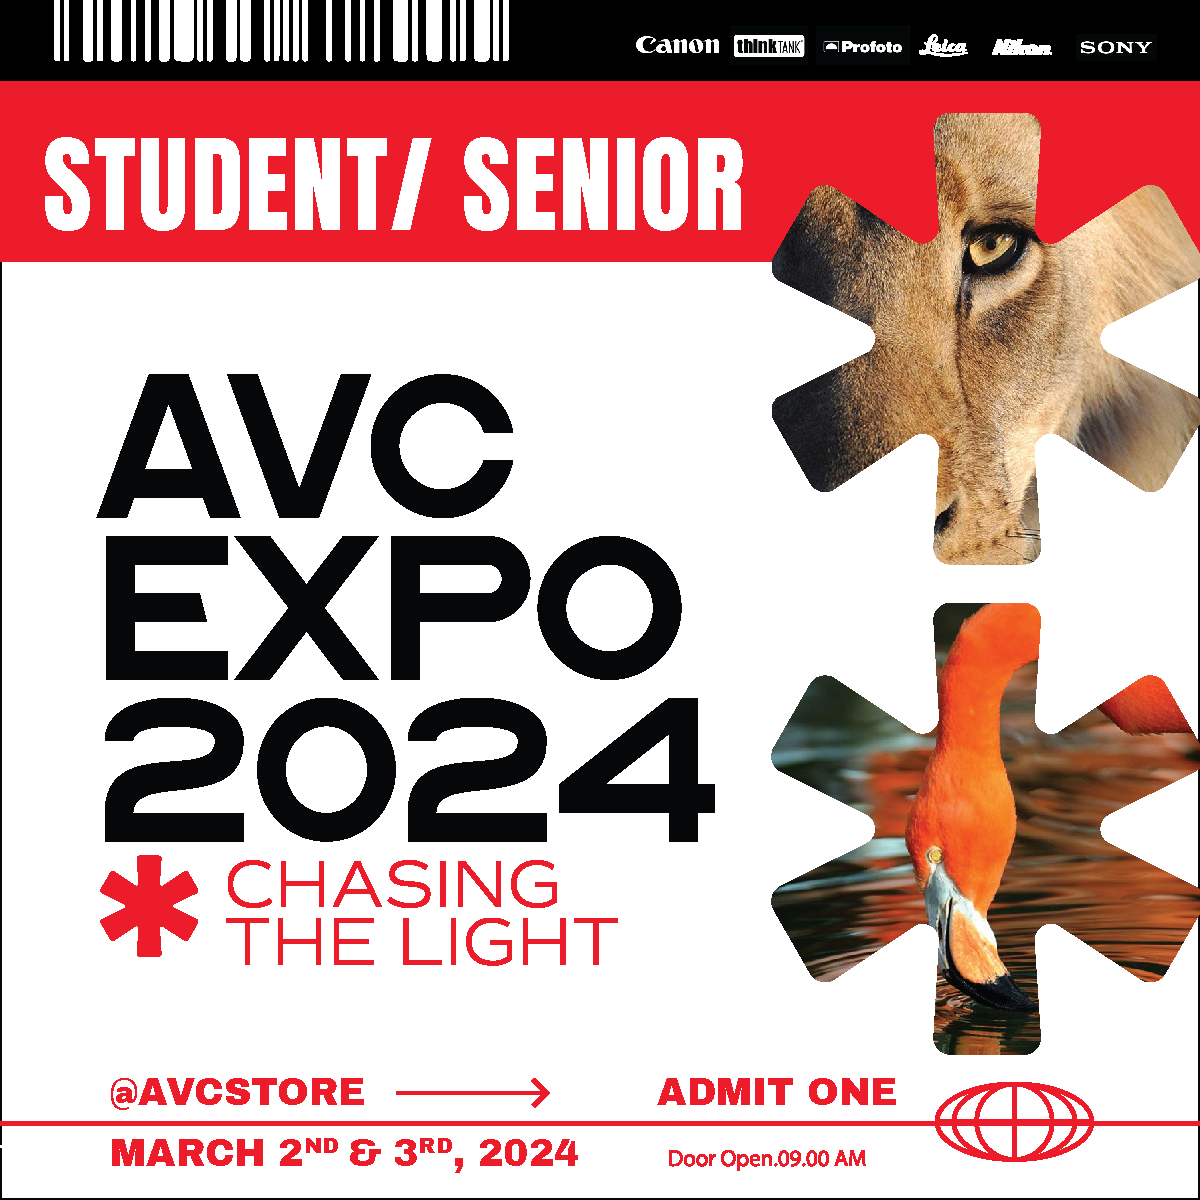 AVC Expo 2024: Chasing the Light - Student/Senior